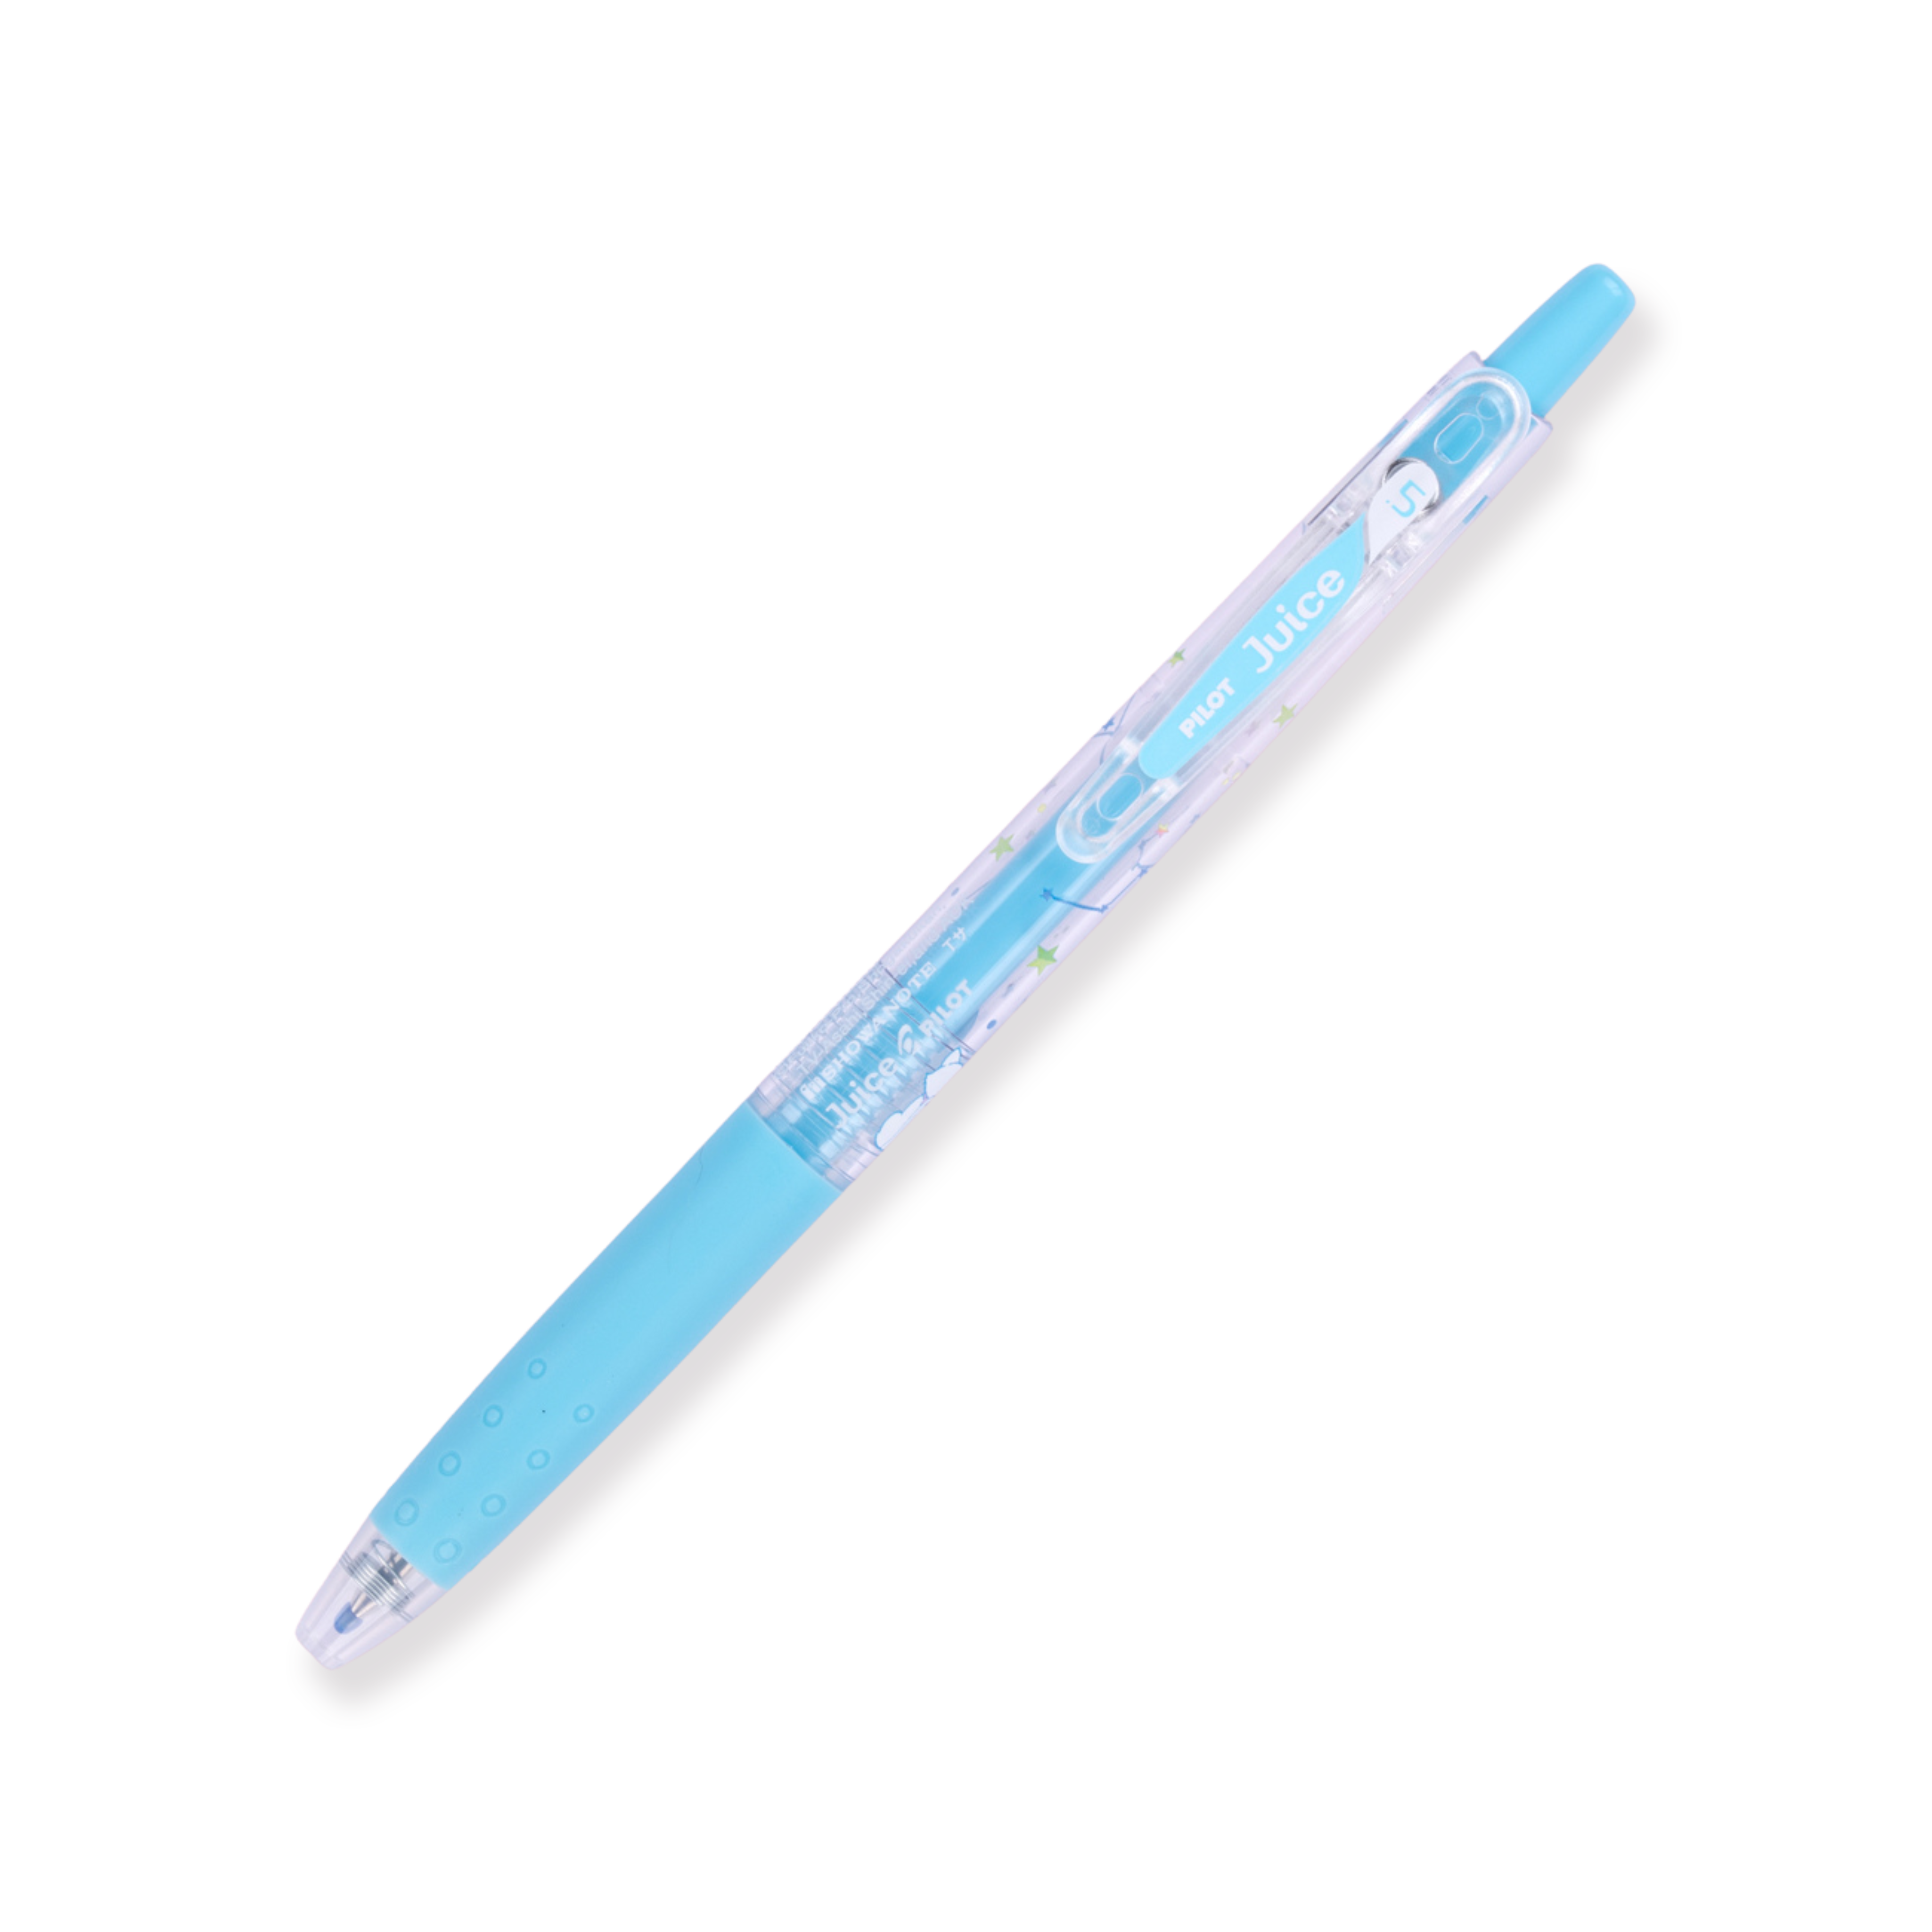 Bolígrafo de gel Pilot Juice de 0,5 mm - Doraemon Pink Set 